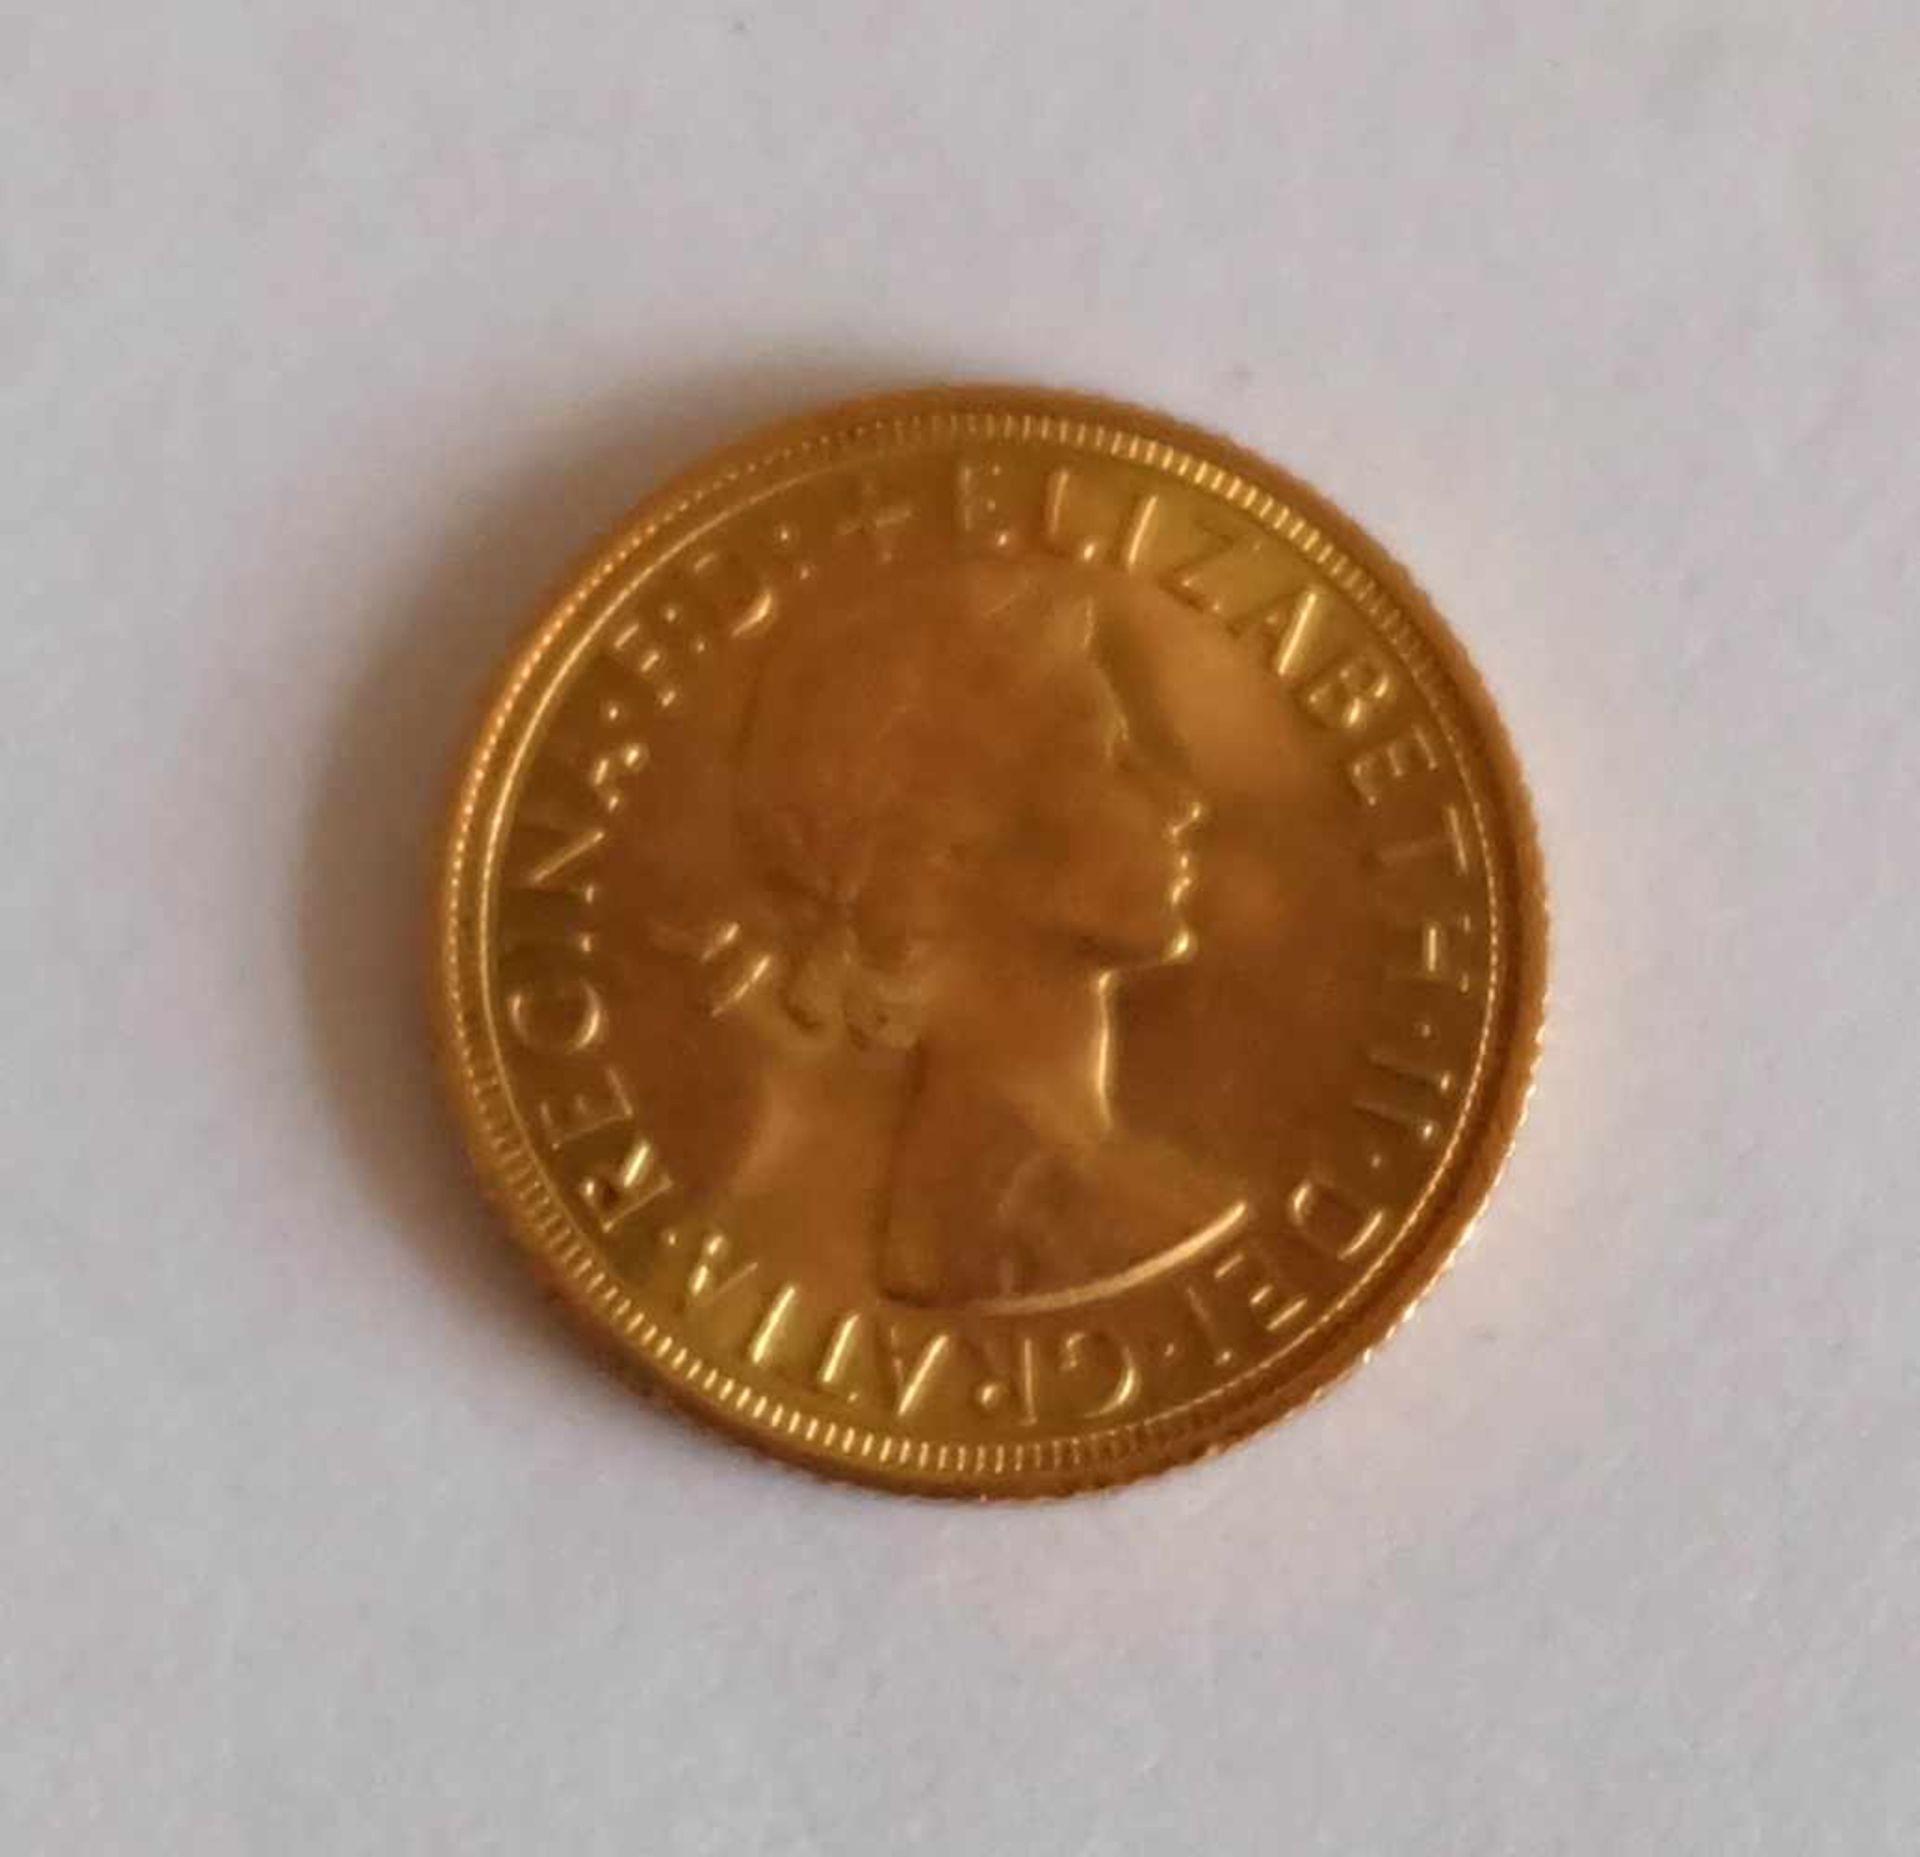 GROßBRITANNIEN, England, 1 Pfund, 1958, Sovereign, 7,988g 916er-Gold, Dm 22,05 mm